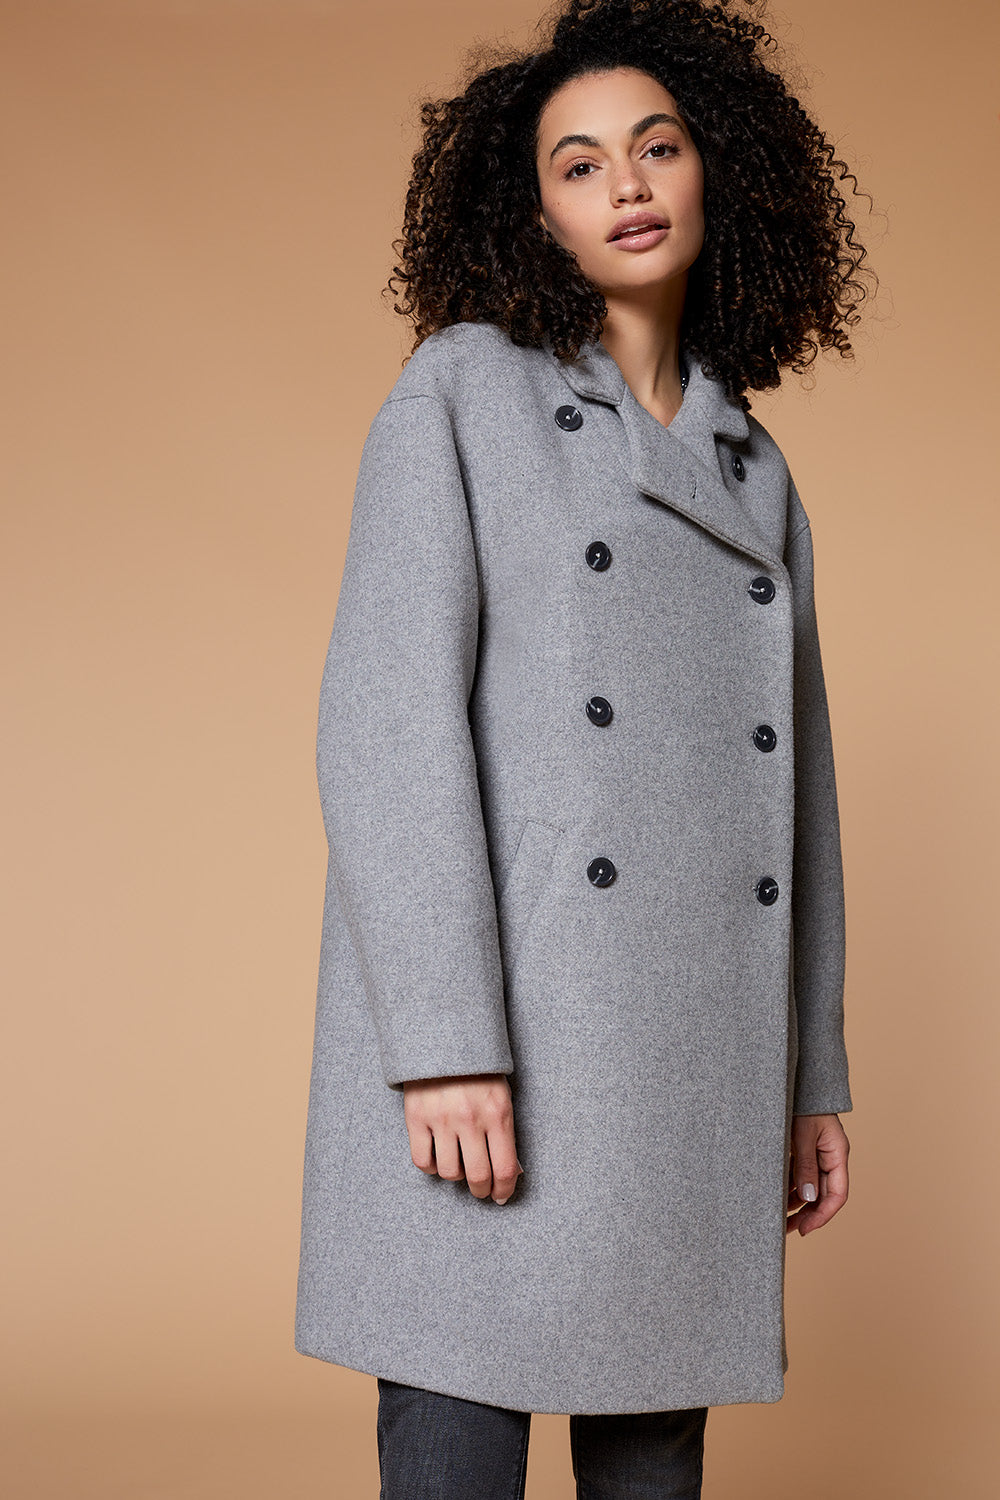 DUARTE - Manteau gris en lainage avec col debout